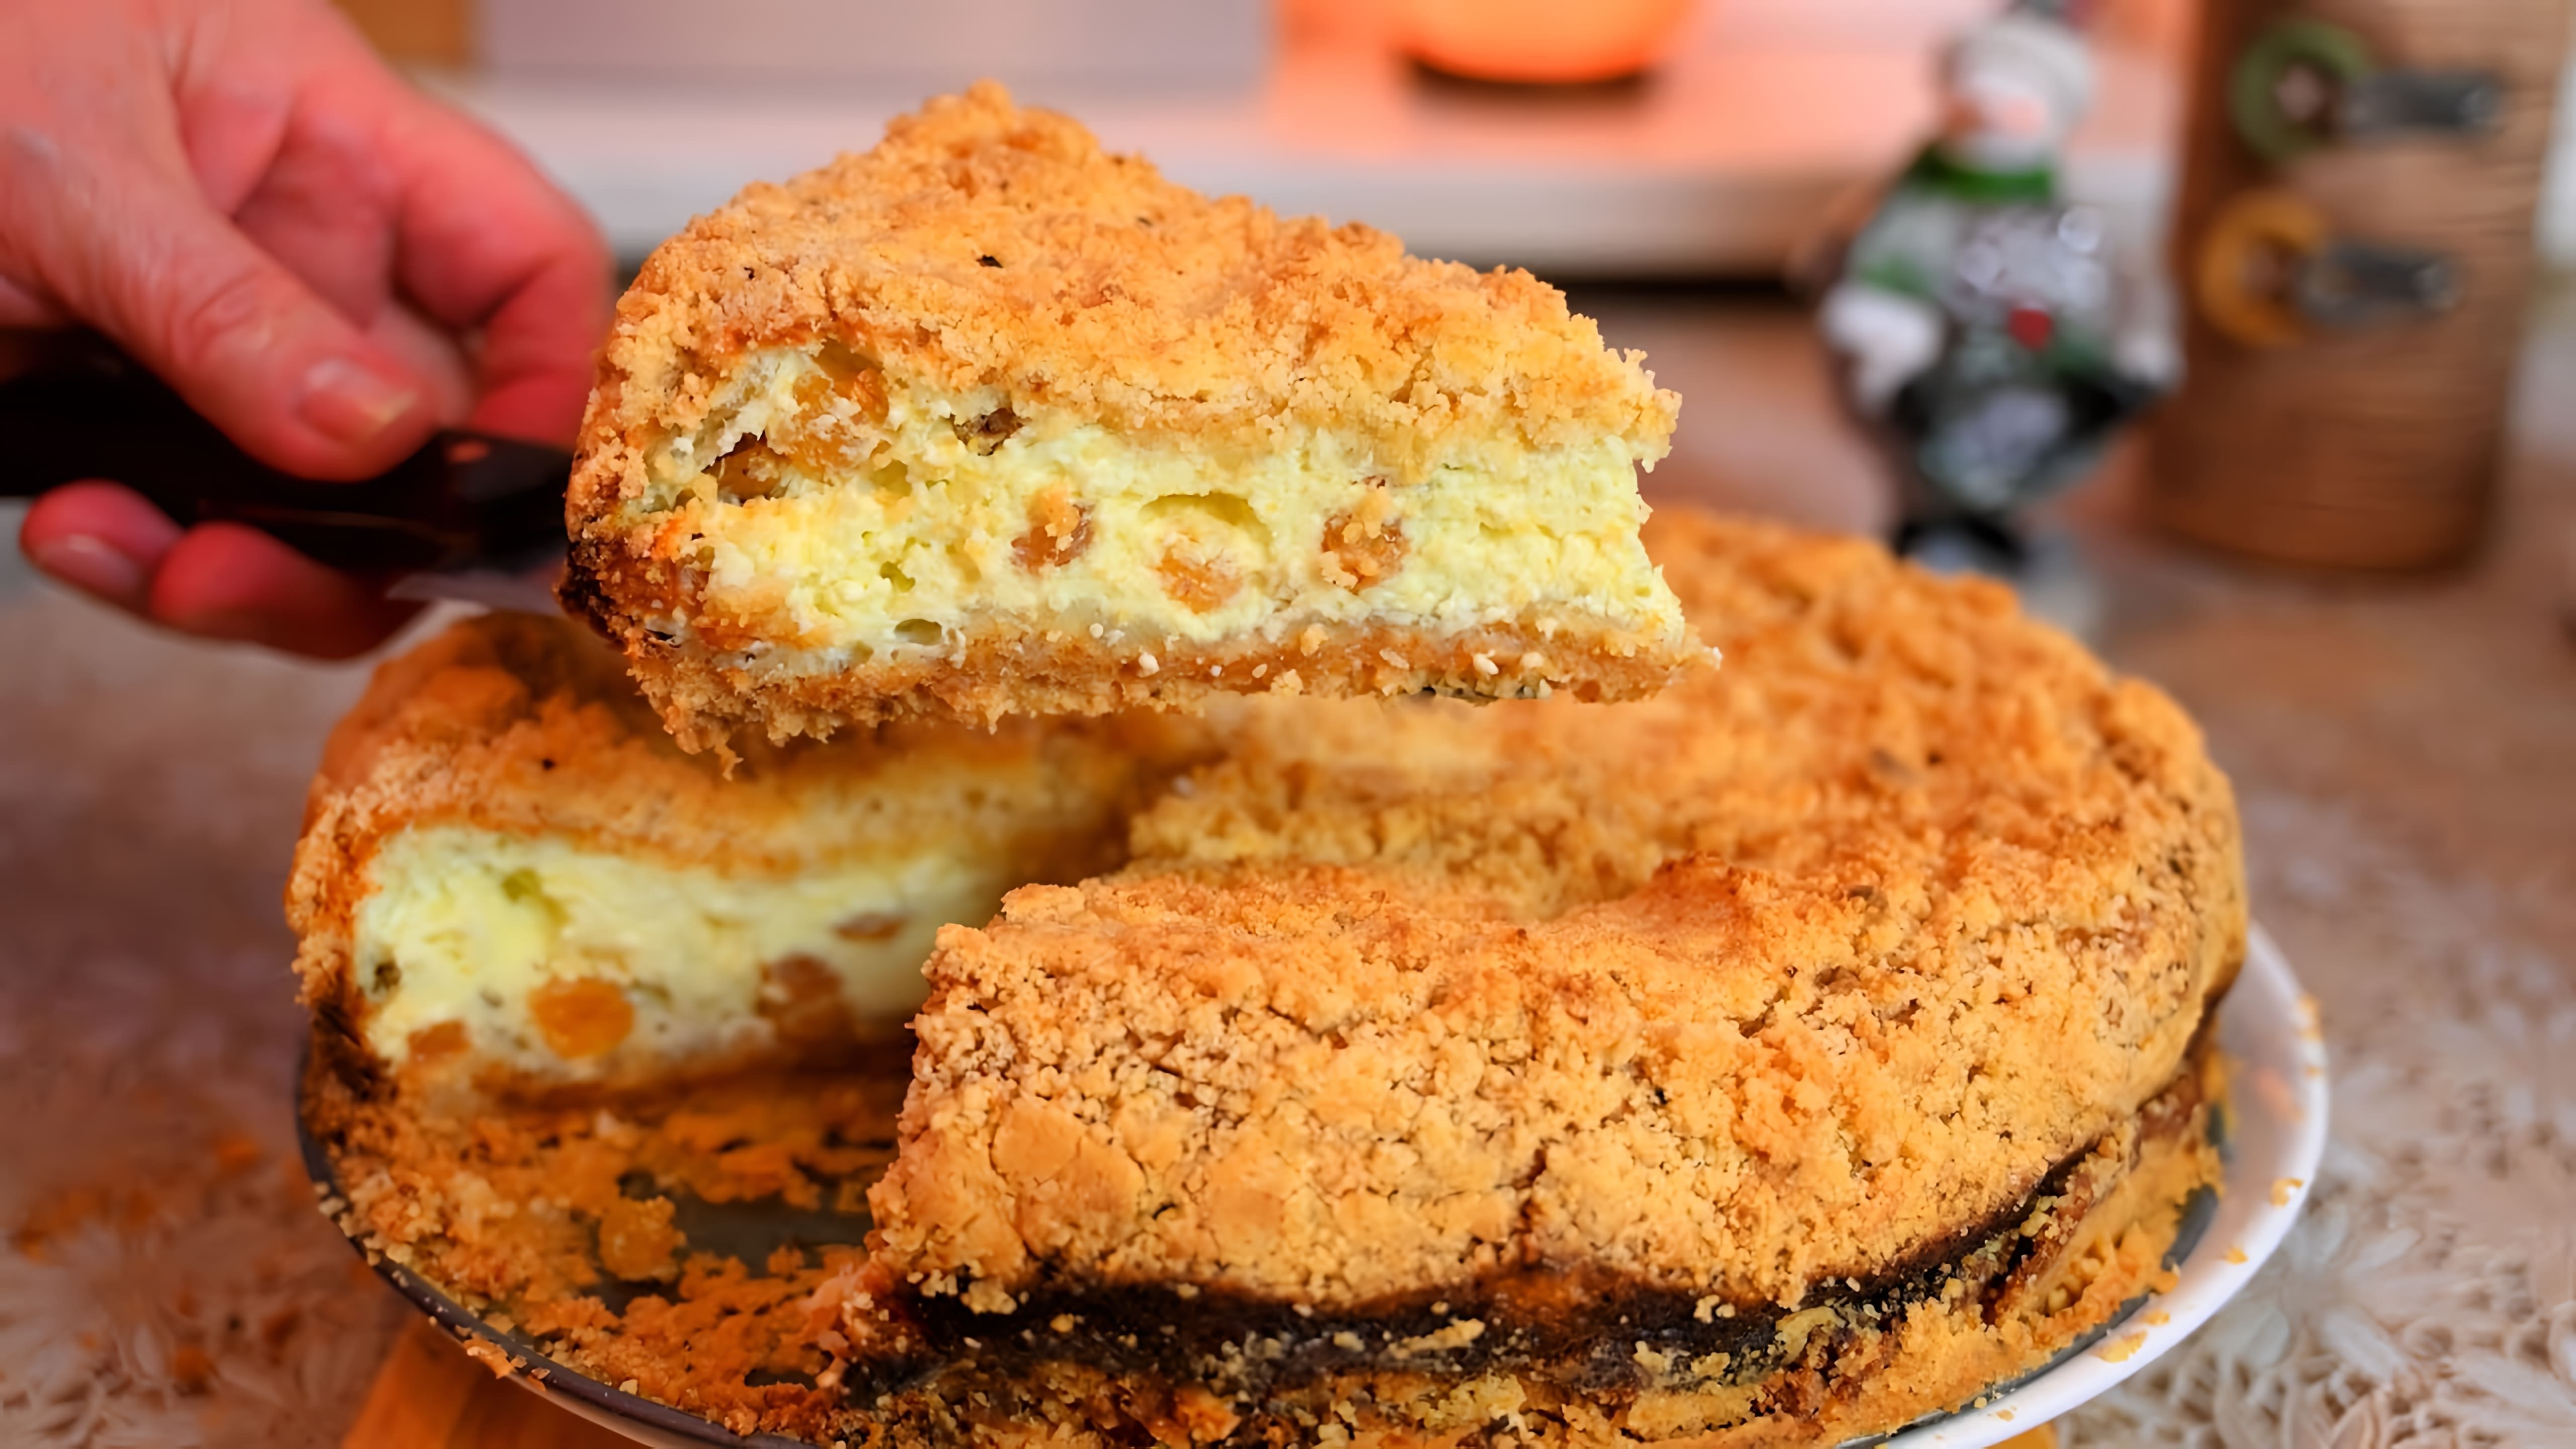 В этом видео демонстрируется рецепт приготовления "Королевской ватрушки" - насыпного творожного пирога, который по вкусу напоминает торт